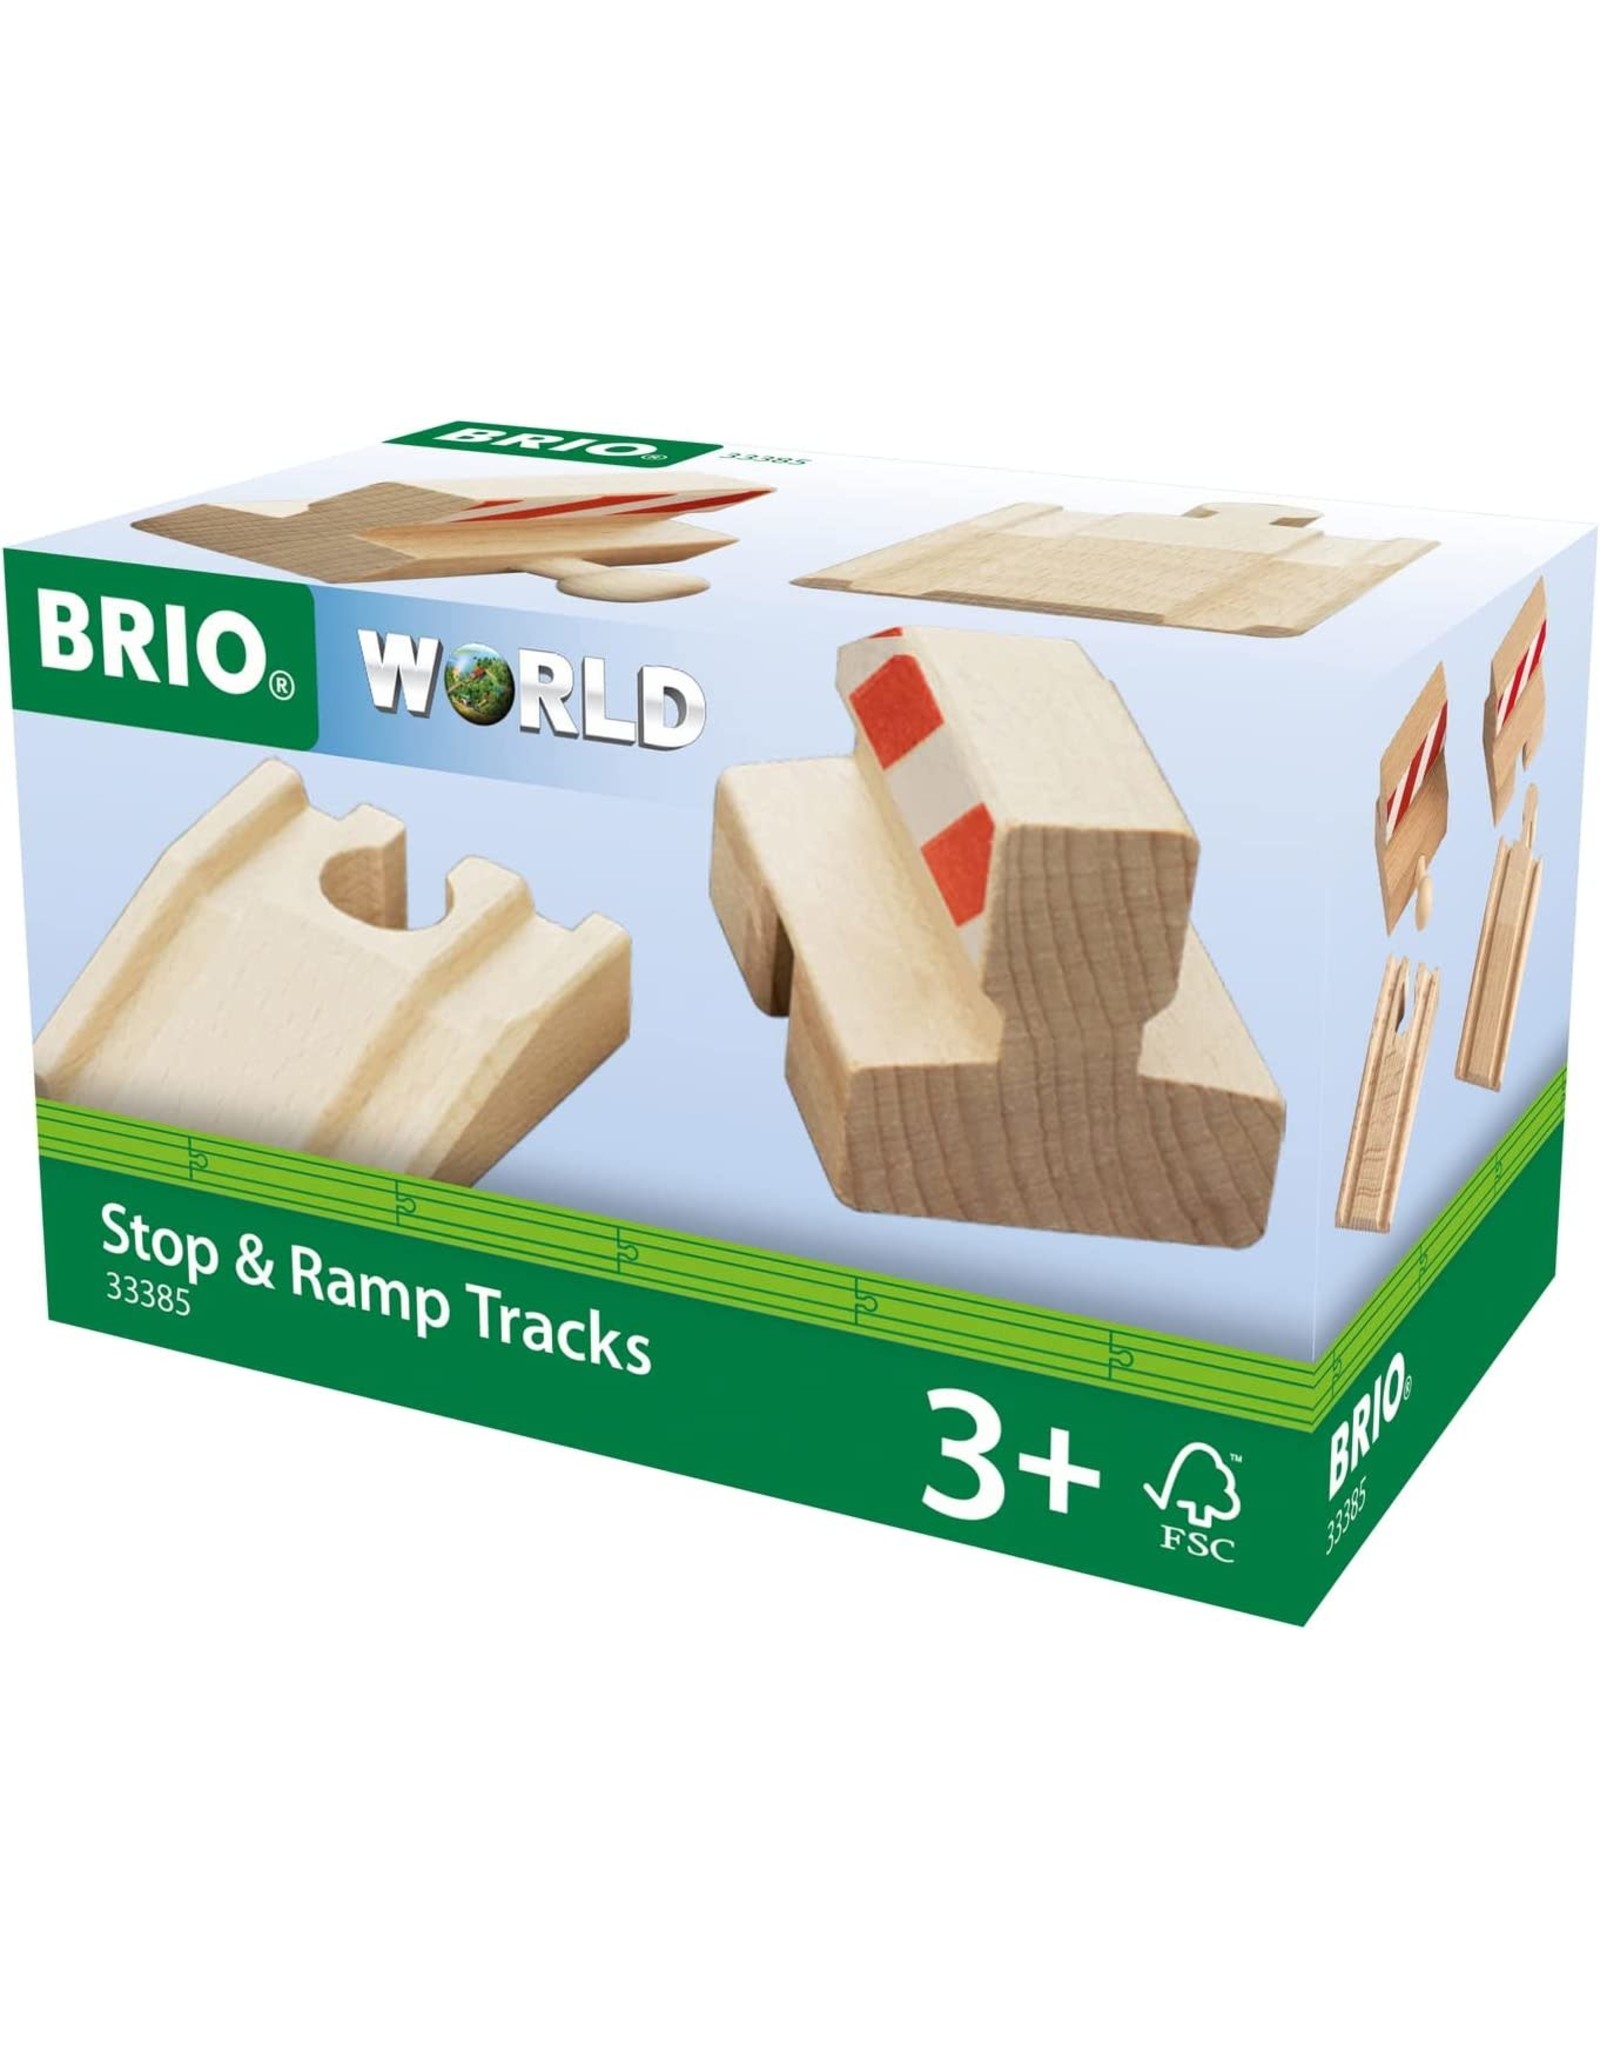 Brio Stop & Ramp Tracks